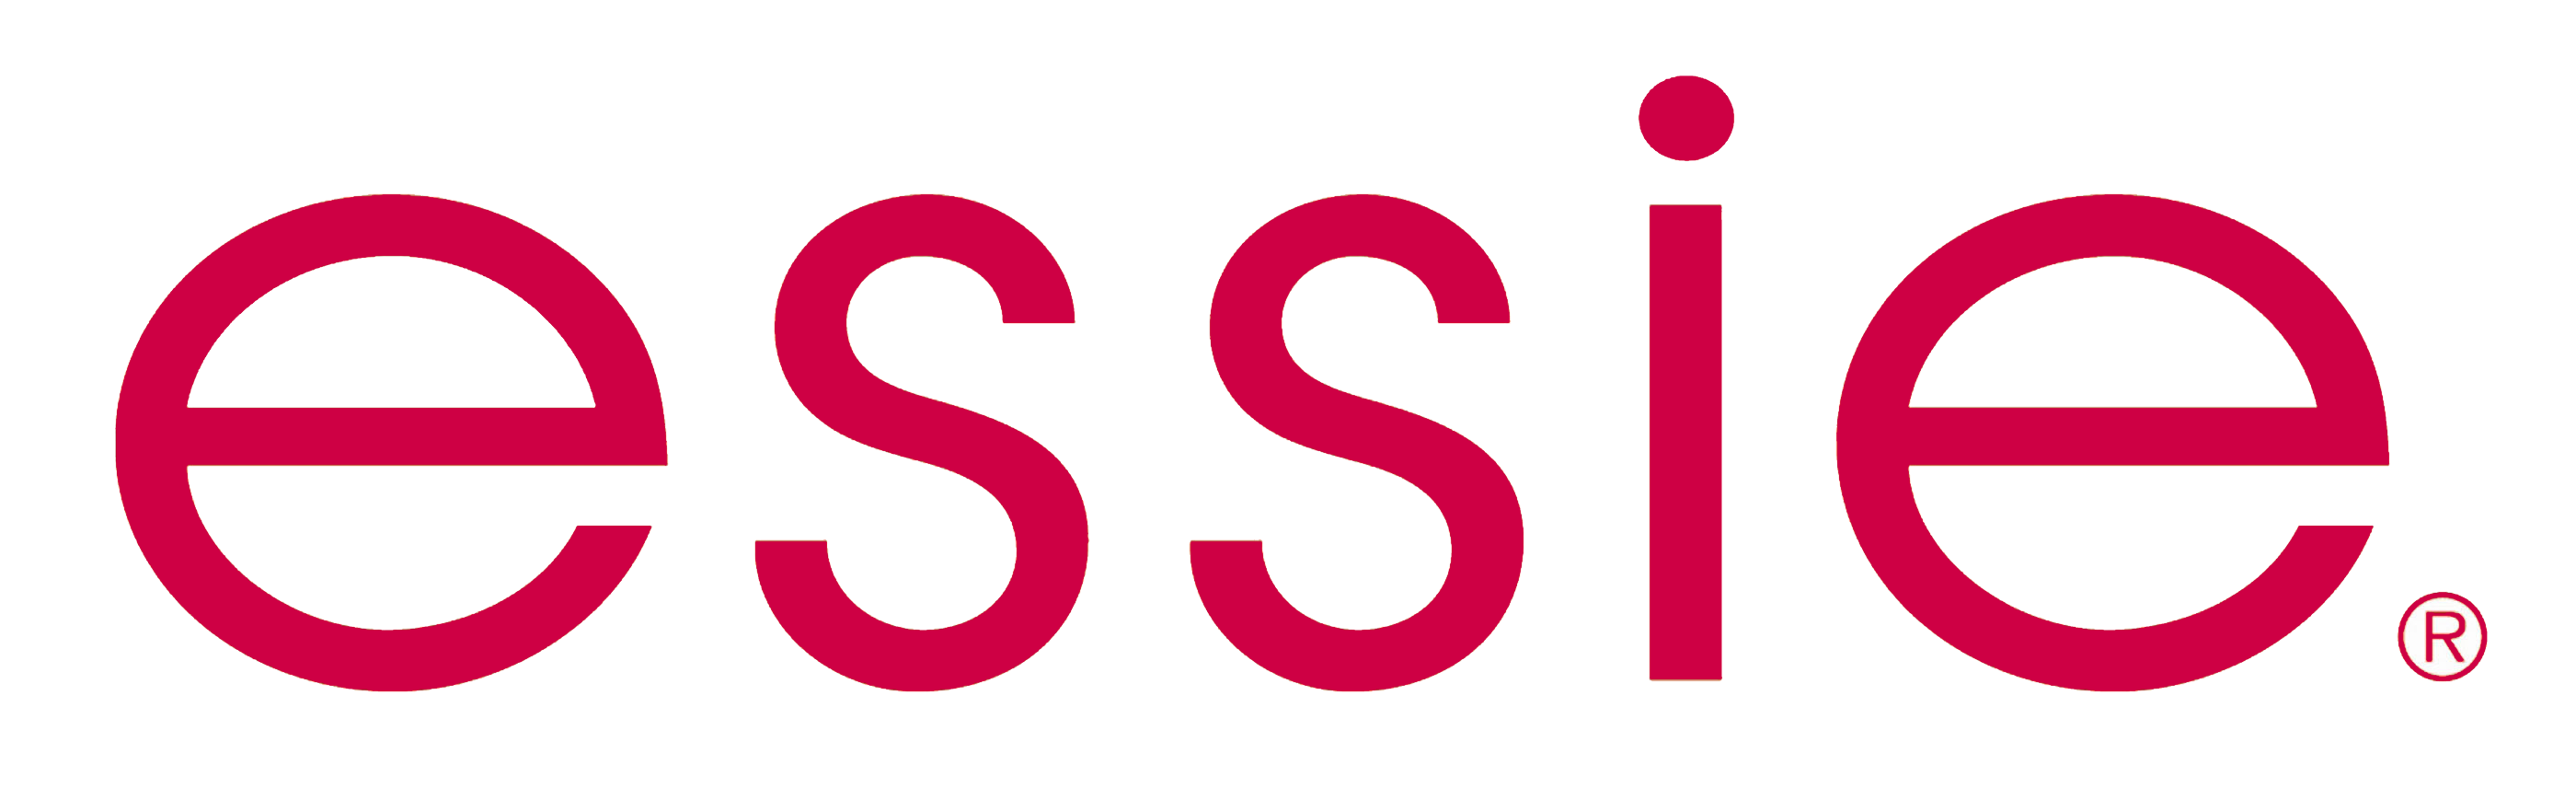 Essie – Logos Download